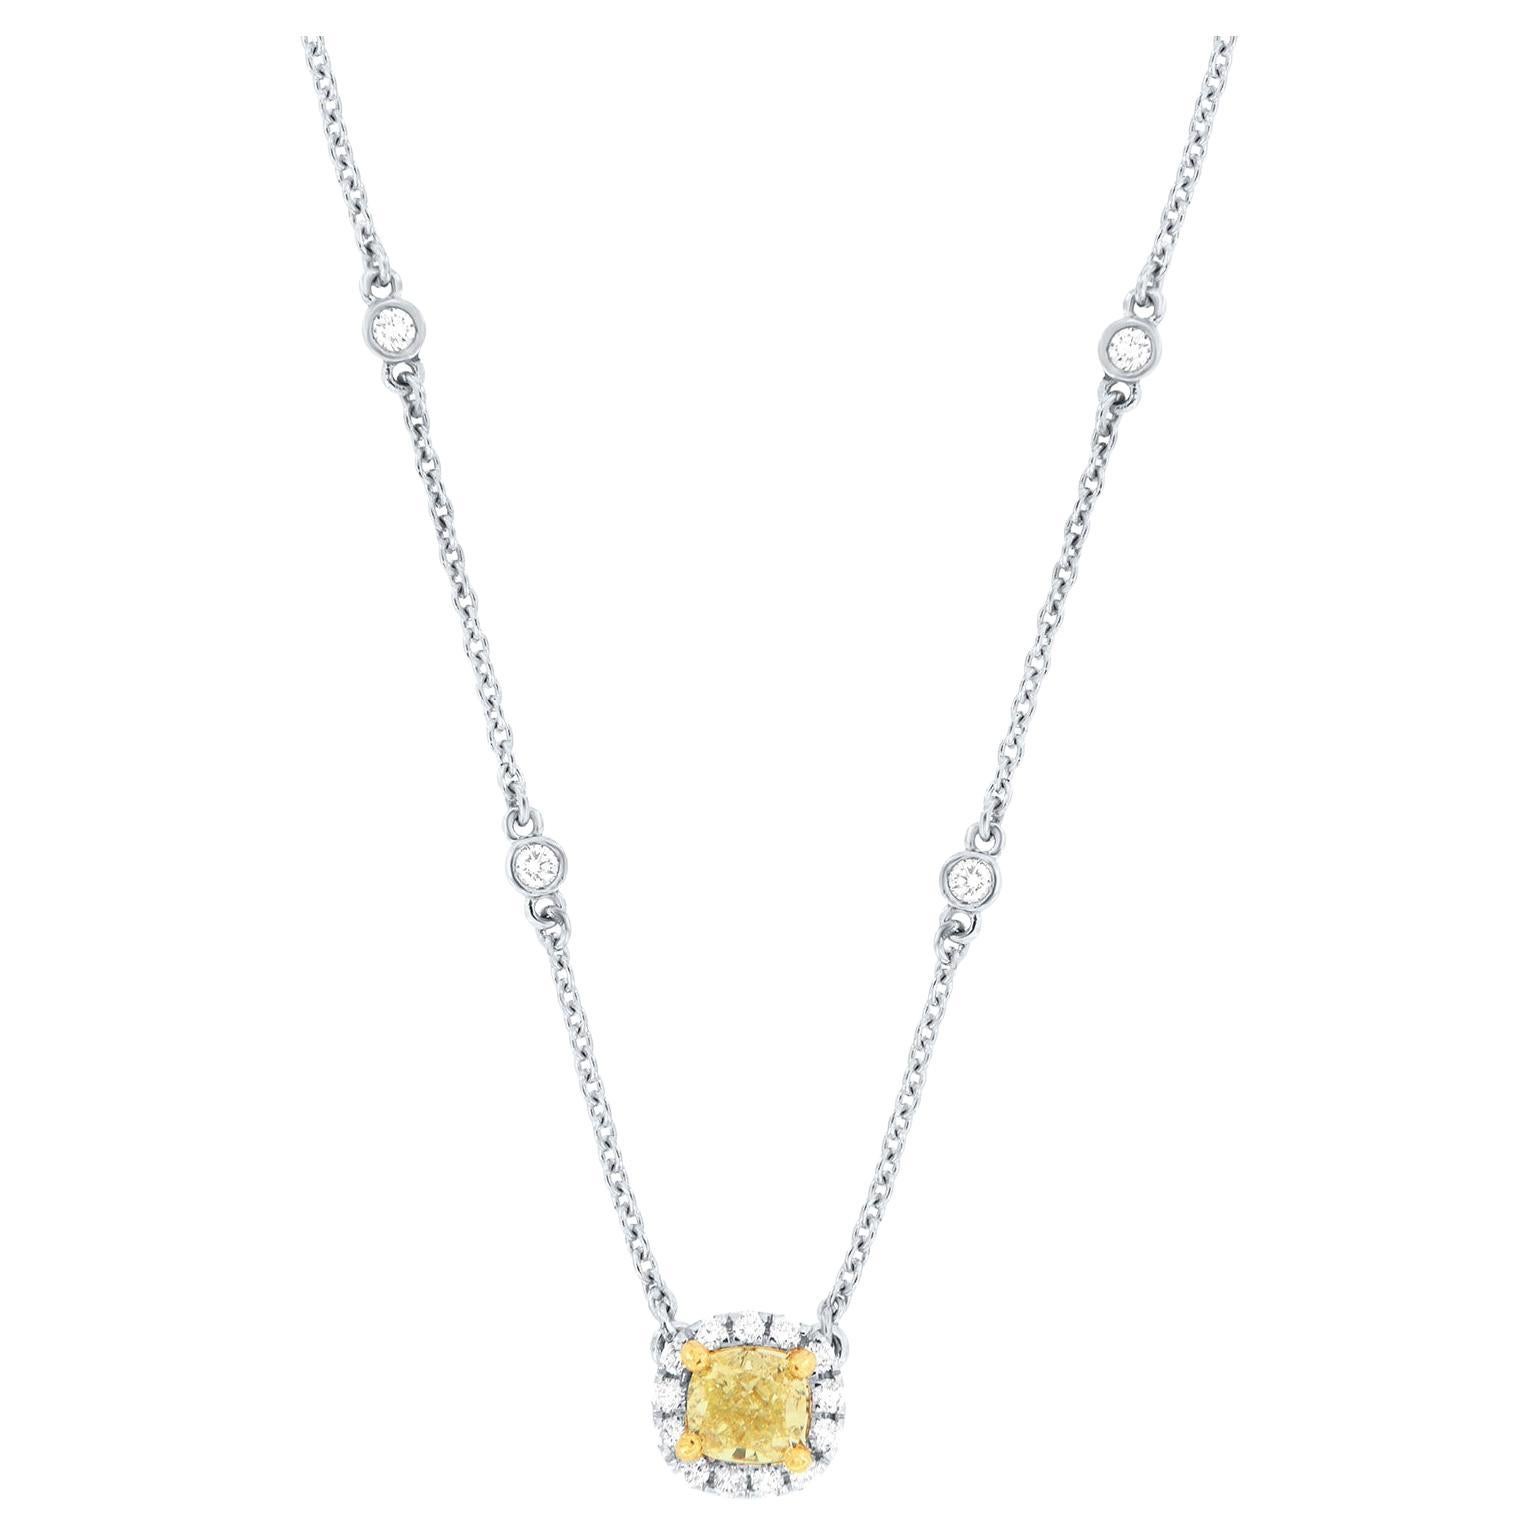 Collier en or blanc et jaune 18 carats avec halo de diamants jaunes taille coussin de 0,51 carat